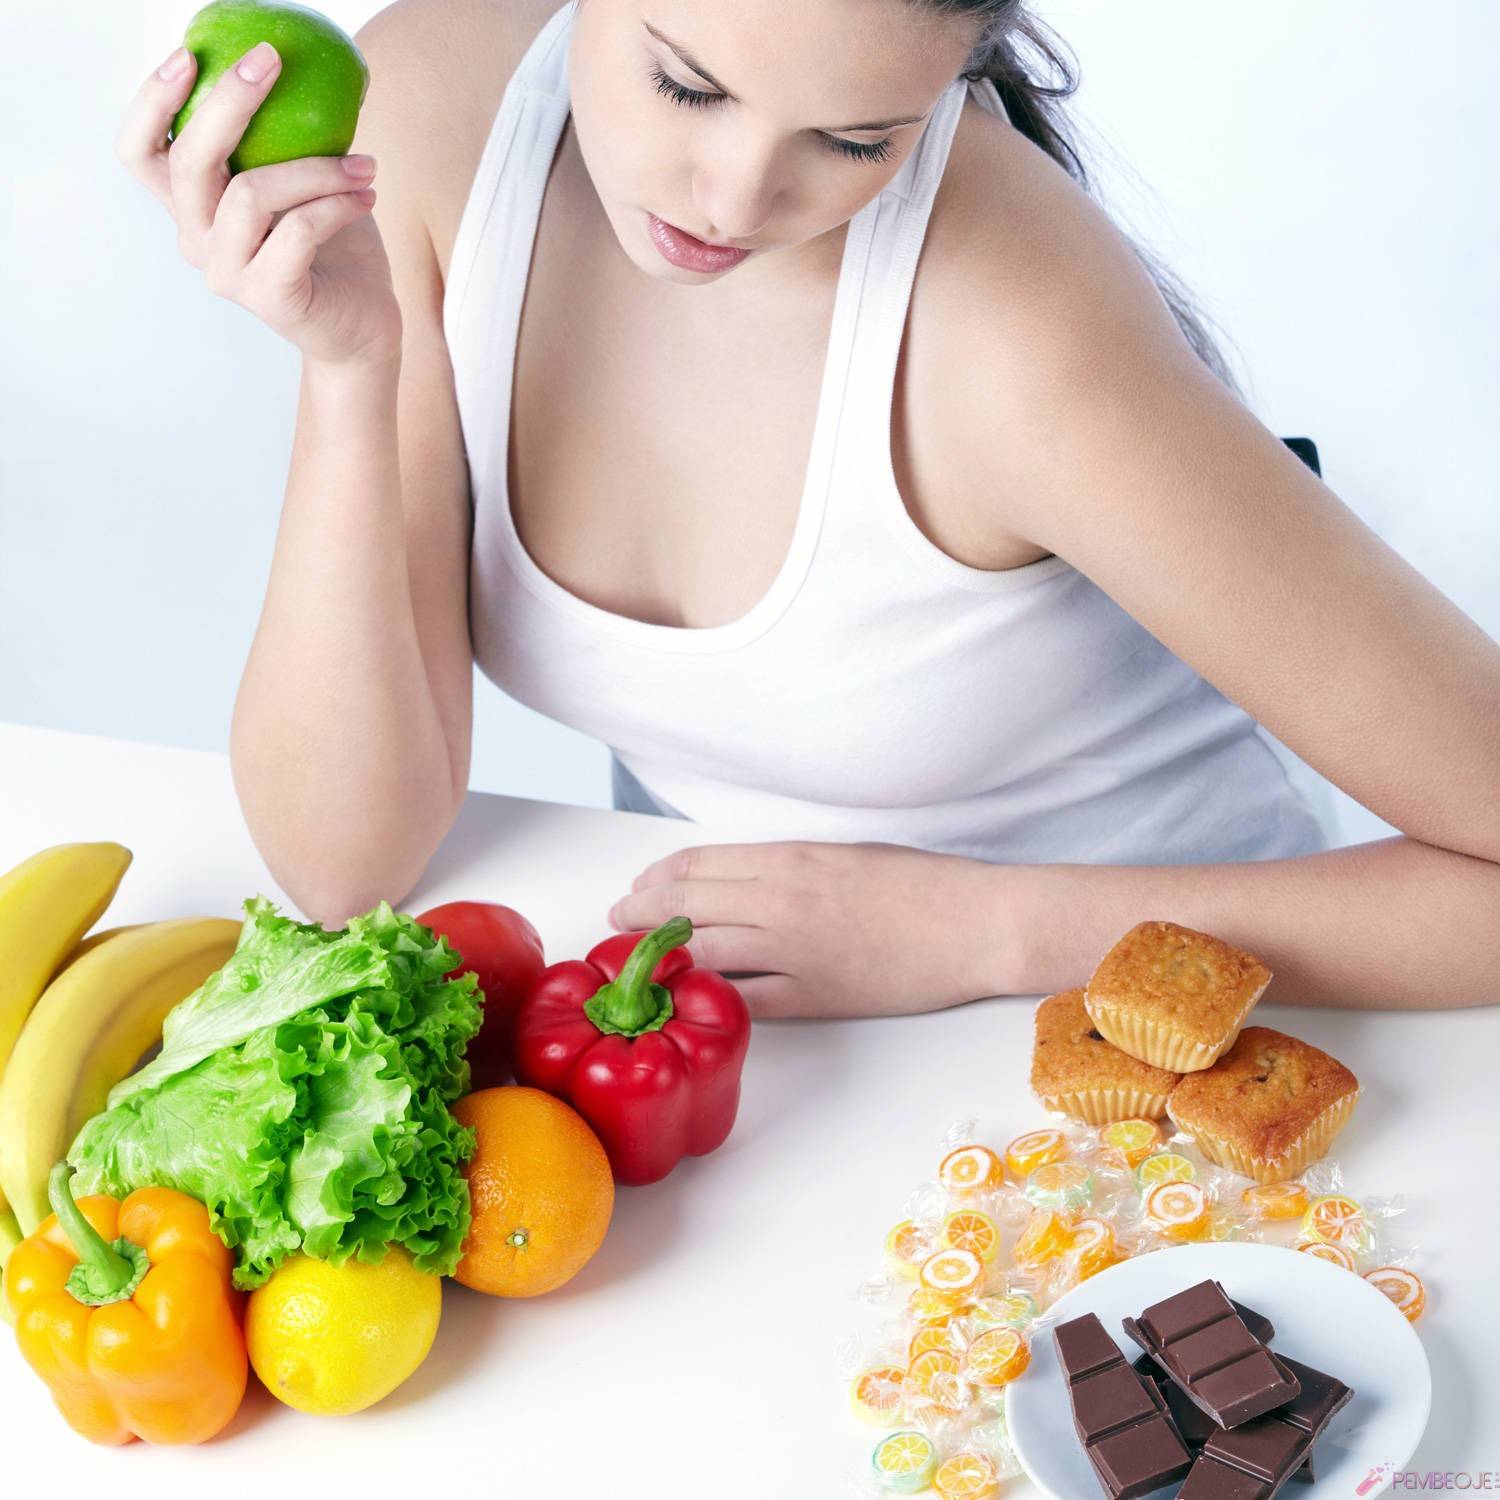 Что съесть, чтобы похудеть - продукты с жиросжигающими свойствами